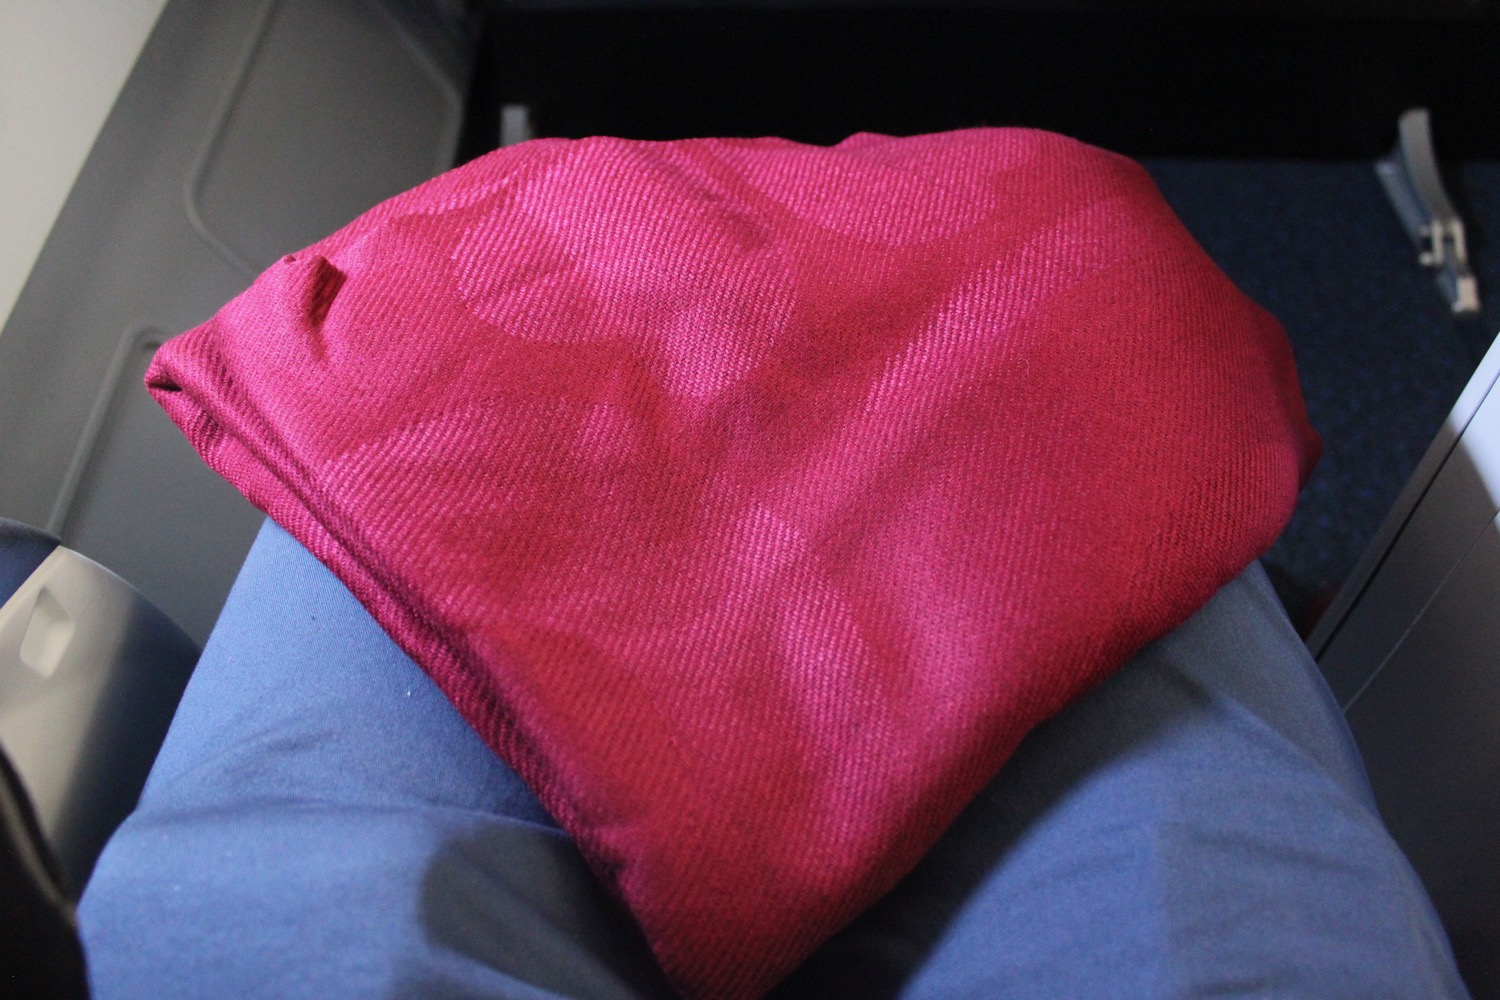 a red pillow on a blue pillow